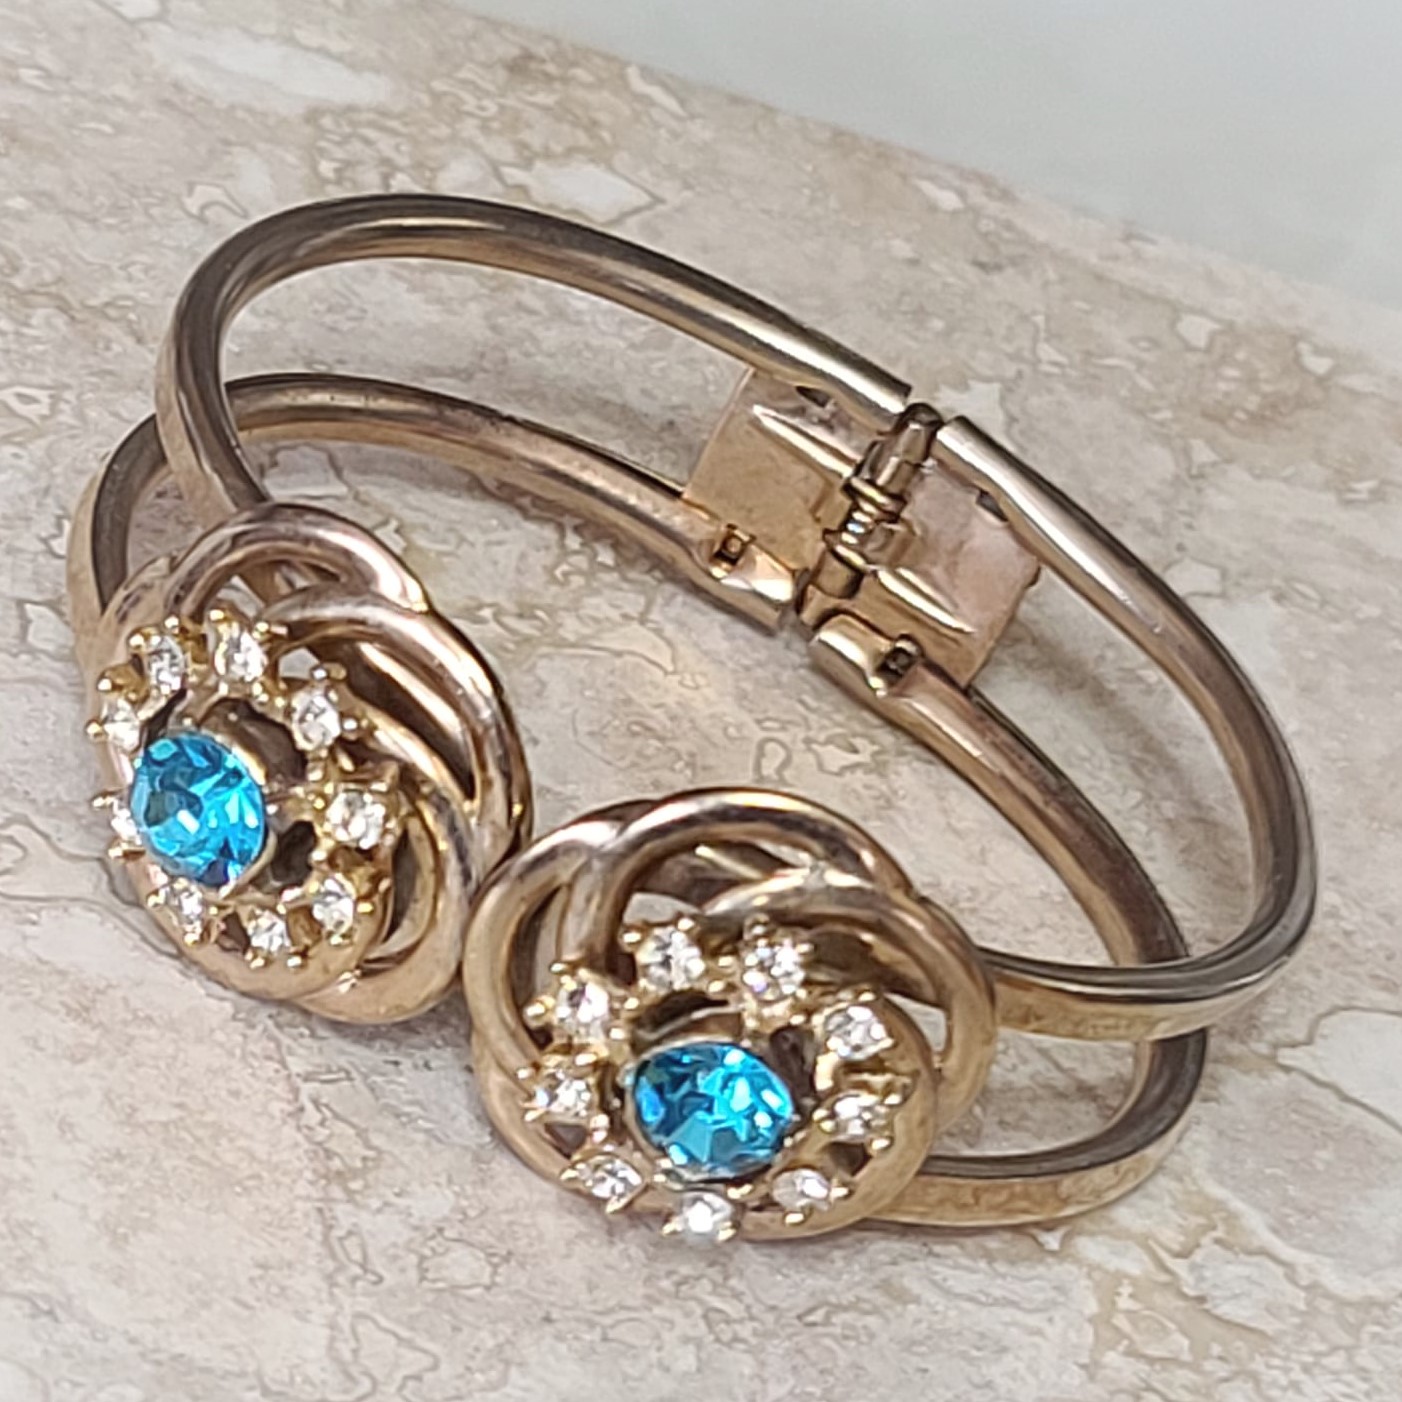 Turquoise rhinestone bracelet, vintage bracelet, clamp style bracelet